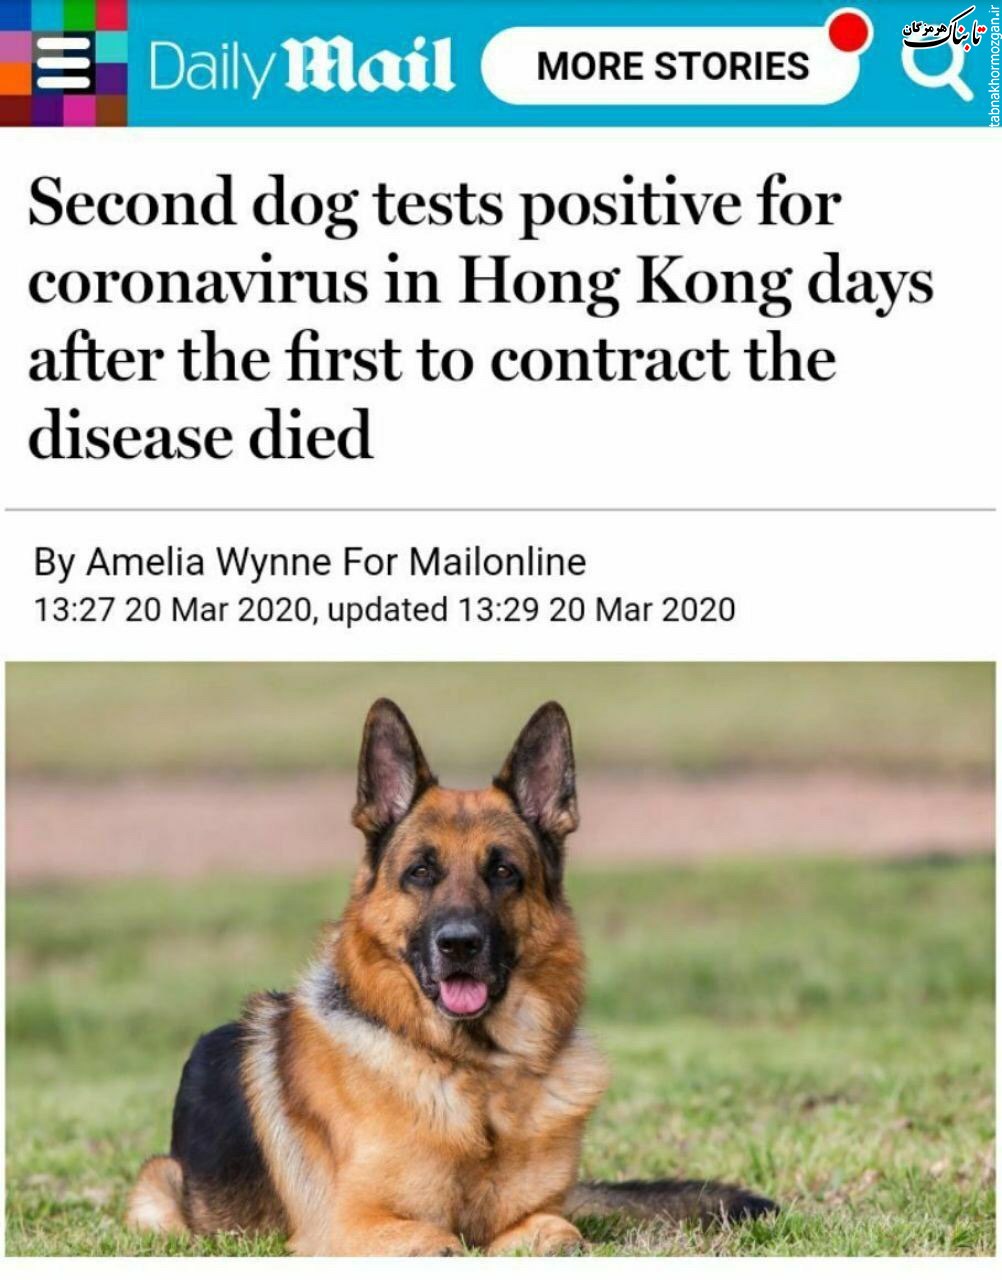 نتیجه آزمایش کرونای دومین سگ نیز مثبت شد